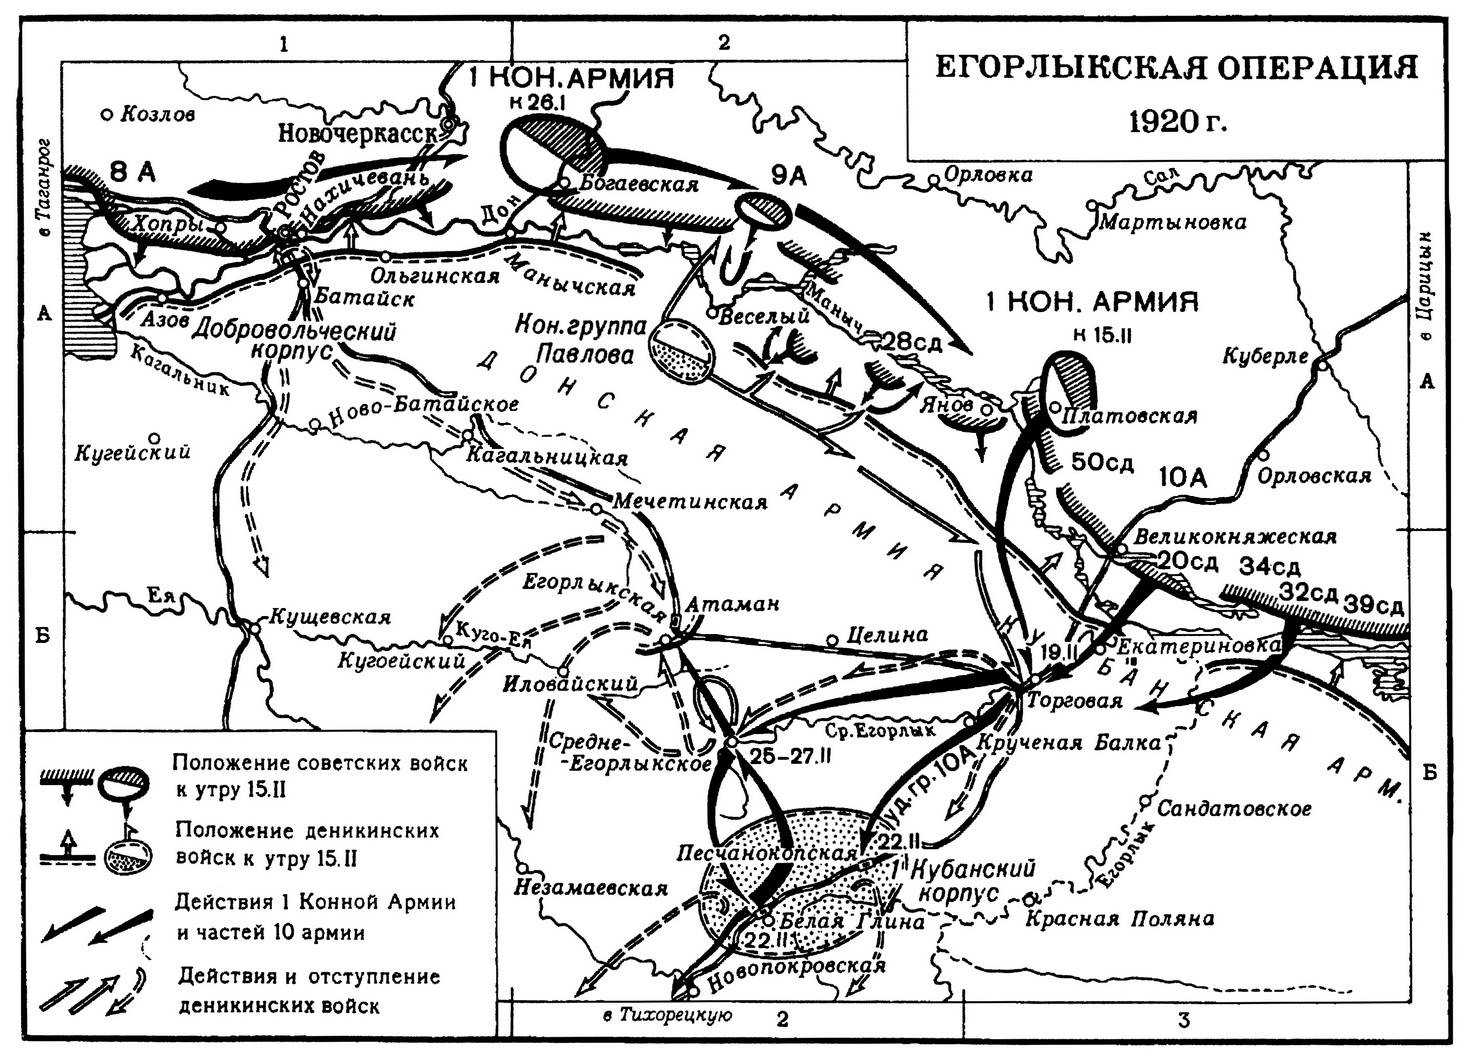 2 входящих операции. Доно-Манычская операция (1920). Егорлыкское сражение 1920 на карте. Егорлыкская битва гражданской войны.